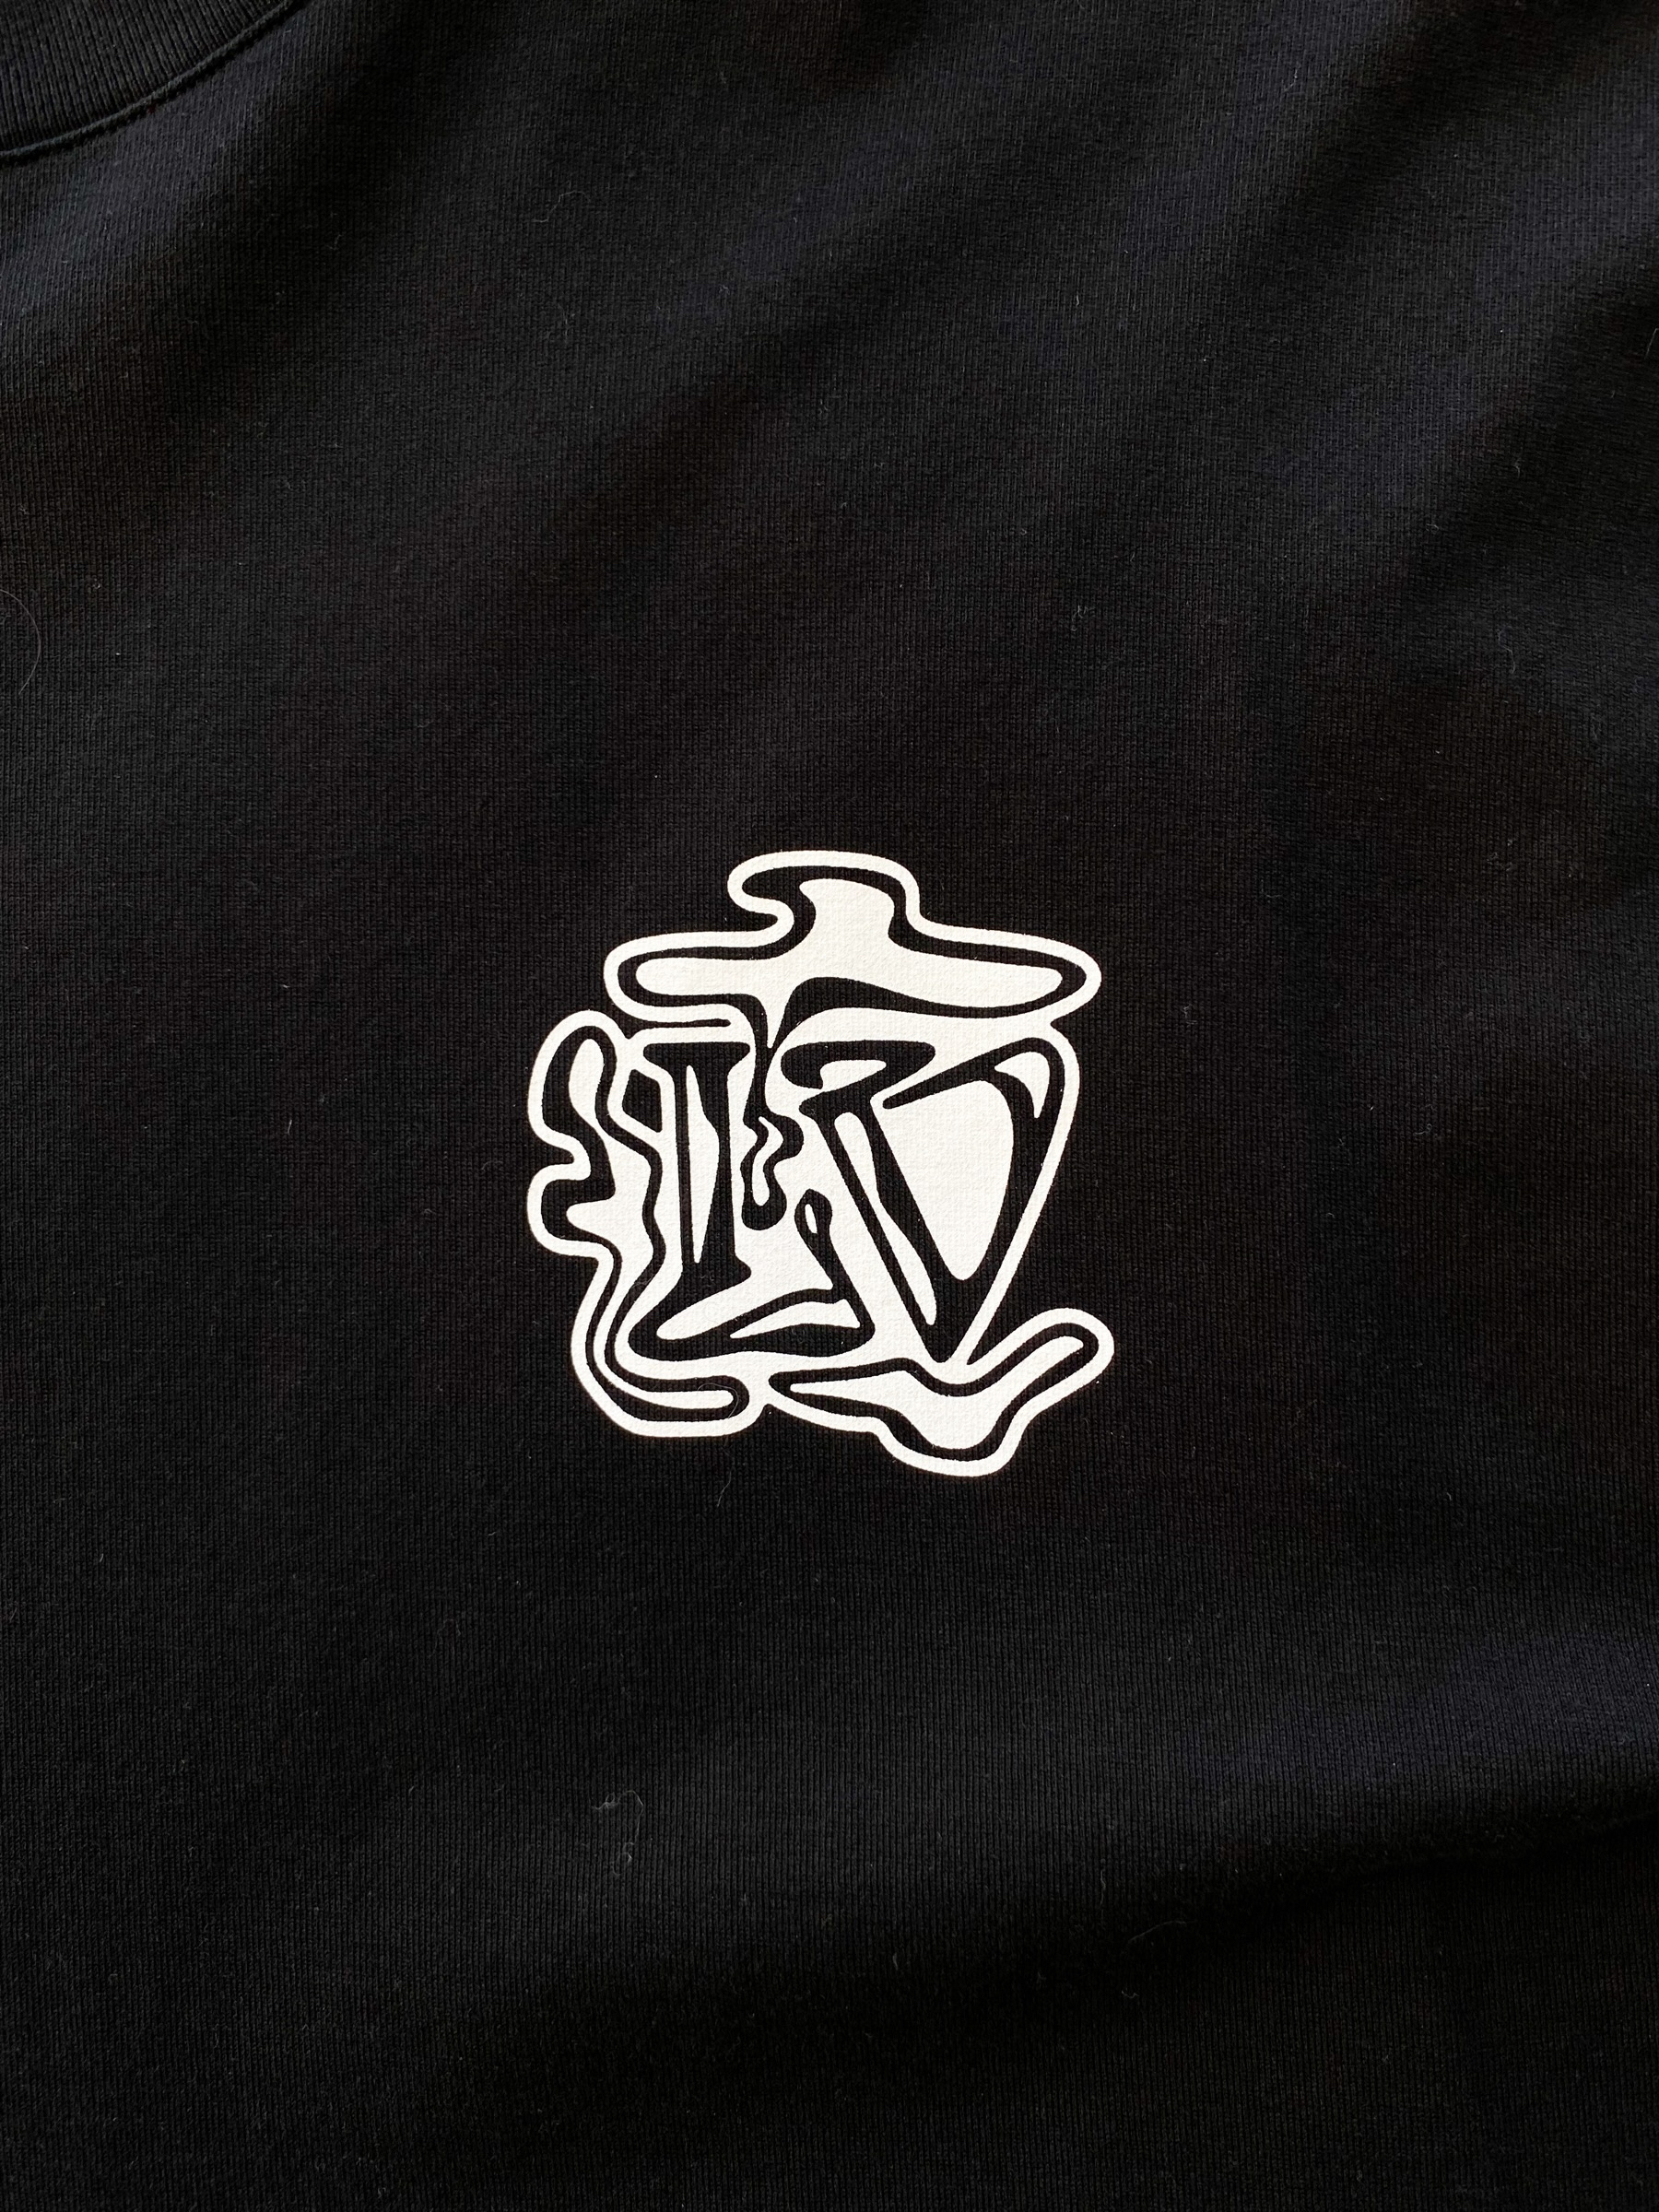 Louis Vuitton Black Cotton Smoke Printed T-Shirt S Louis Vuitton